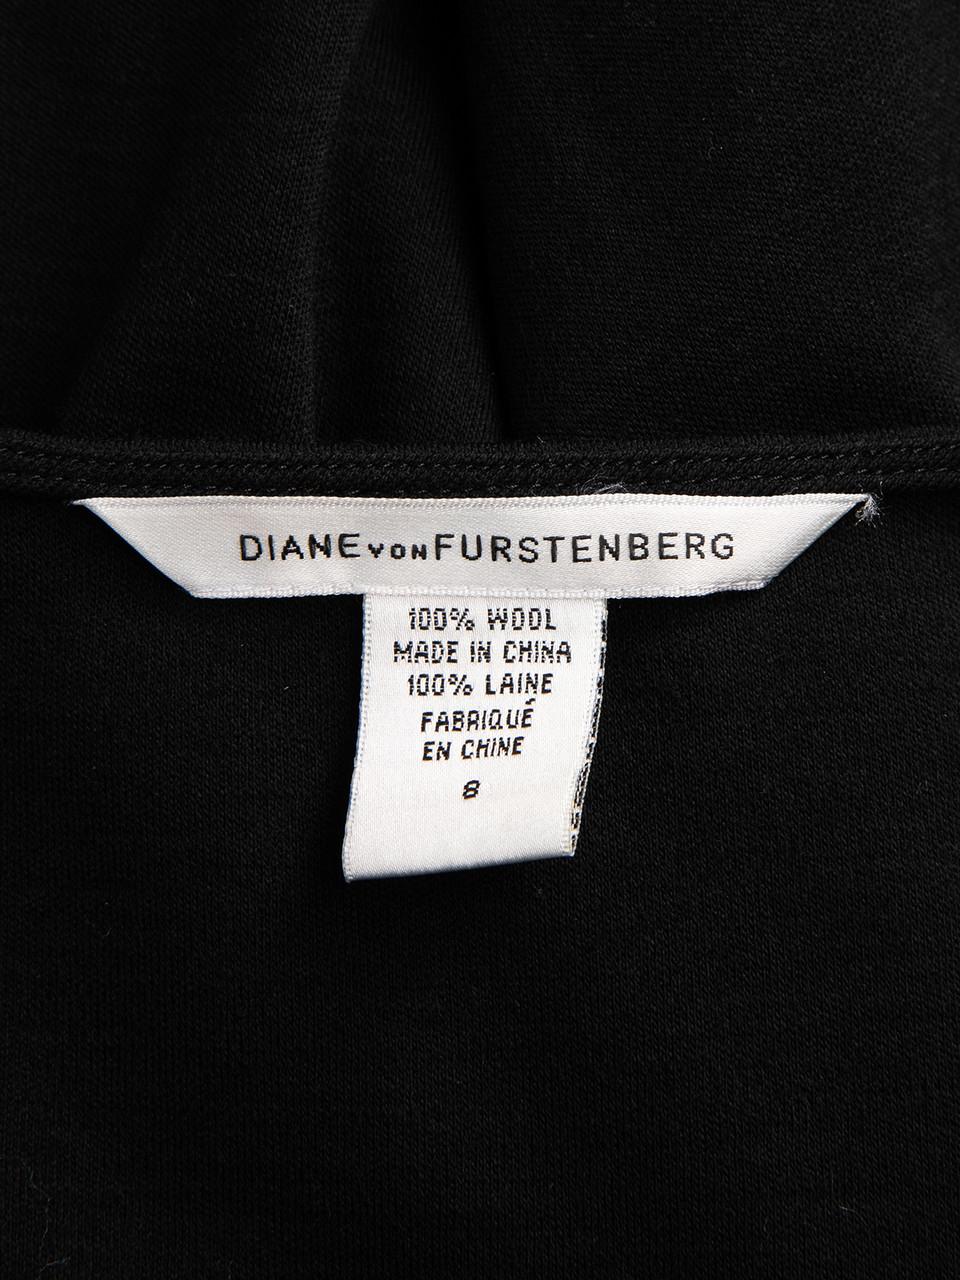 Diane von Furstenberg Black Wool Sleeveless Wrap Dress Size L For Sale 1